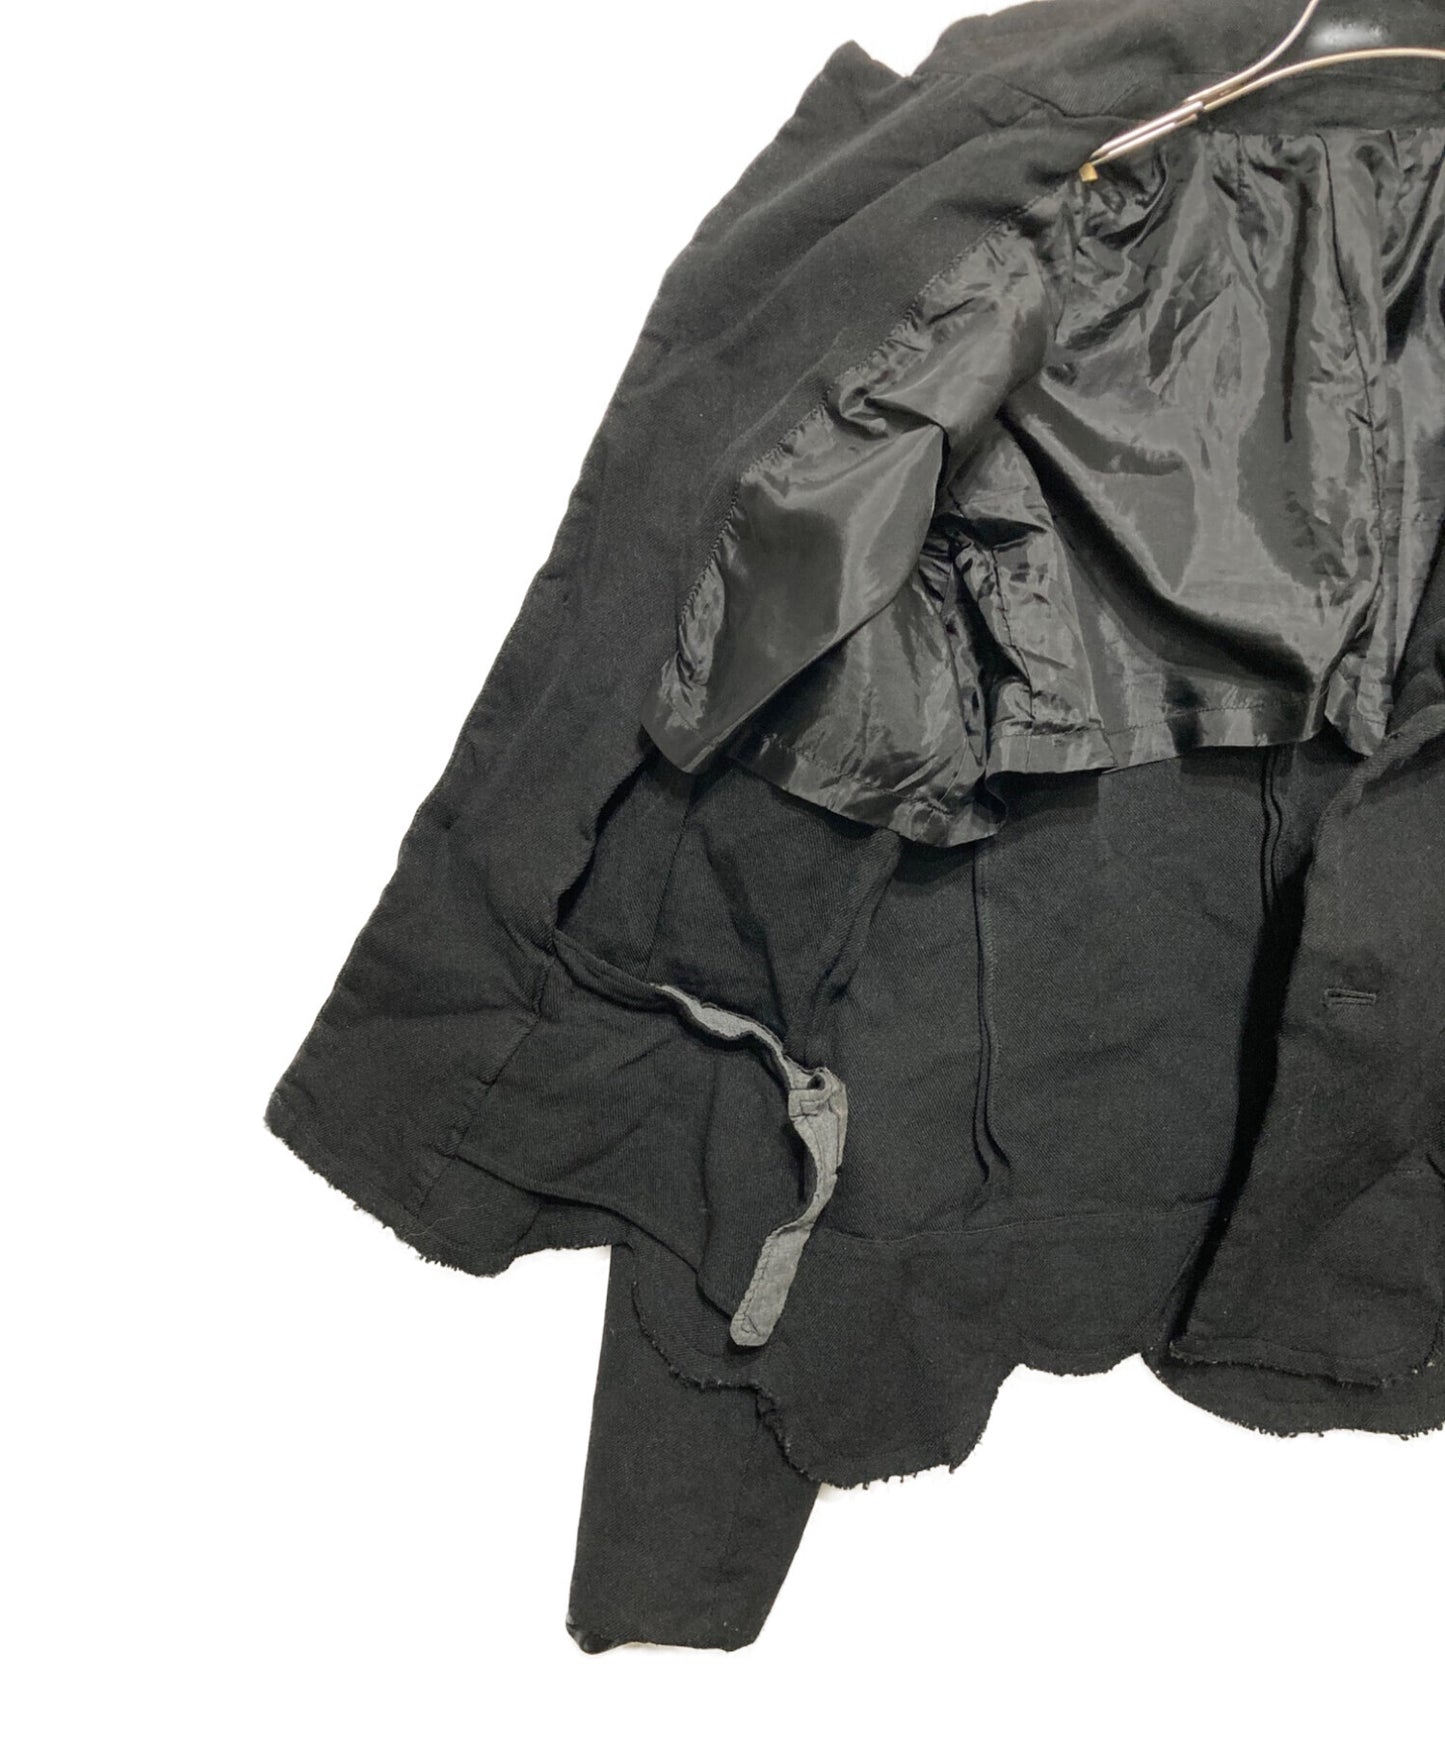 Robe de Chambre Comme Des Garcons Cutoff Cropped Jacket RM-J004